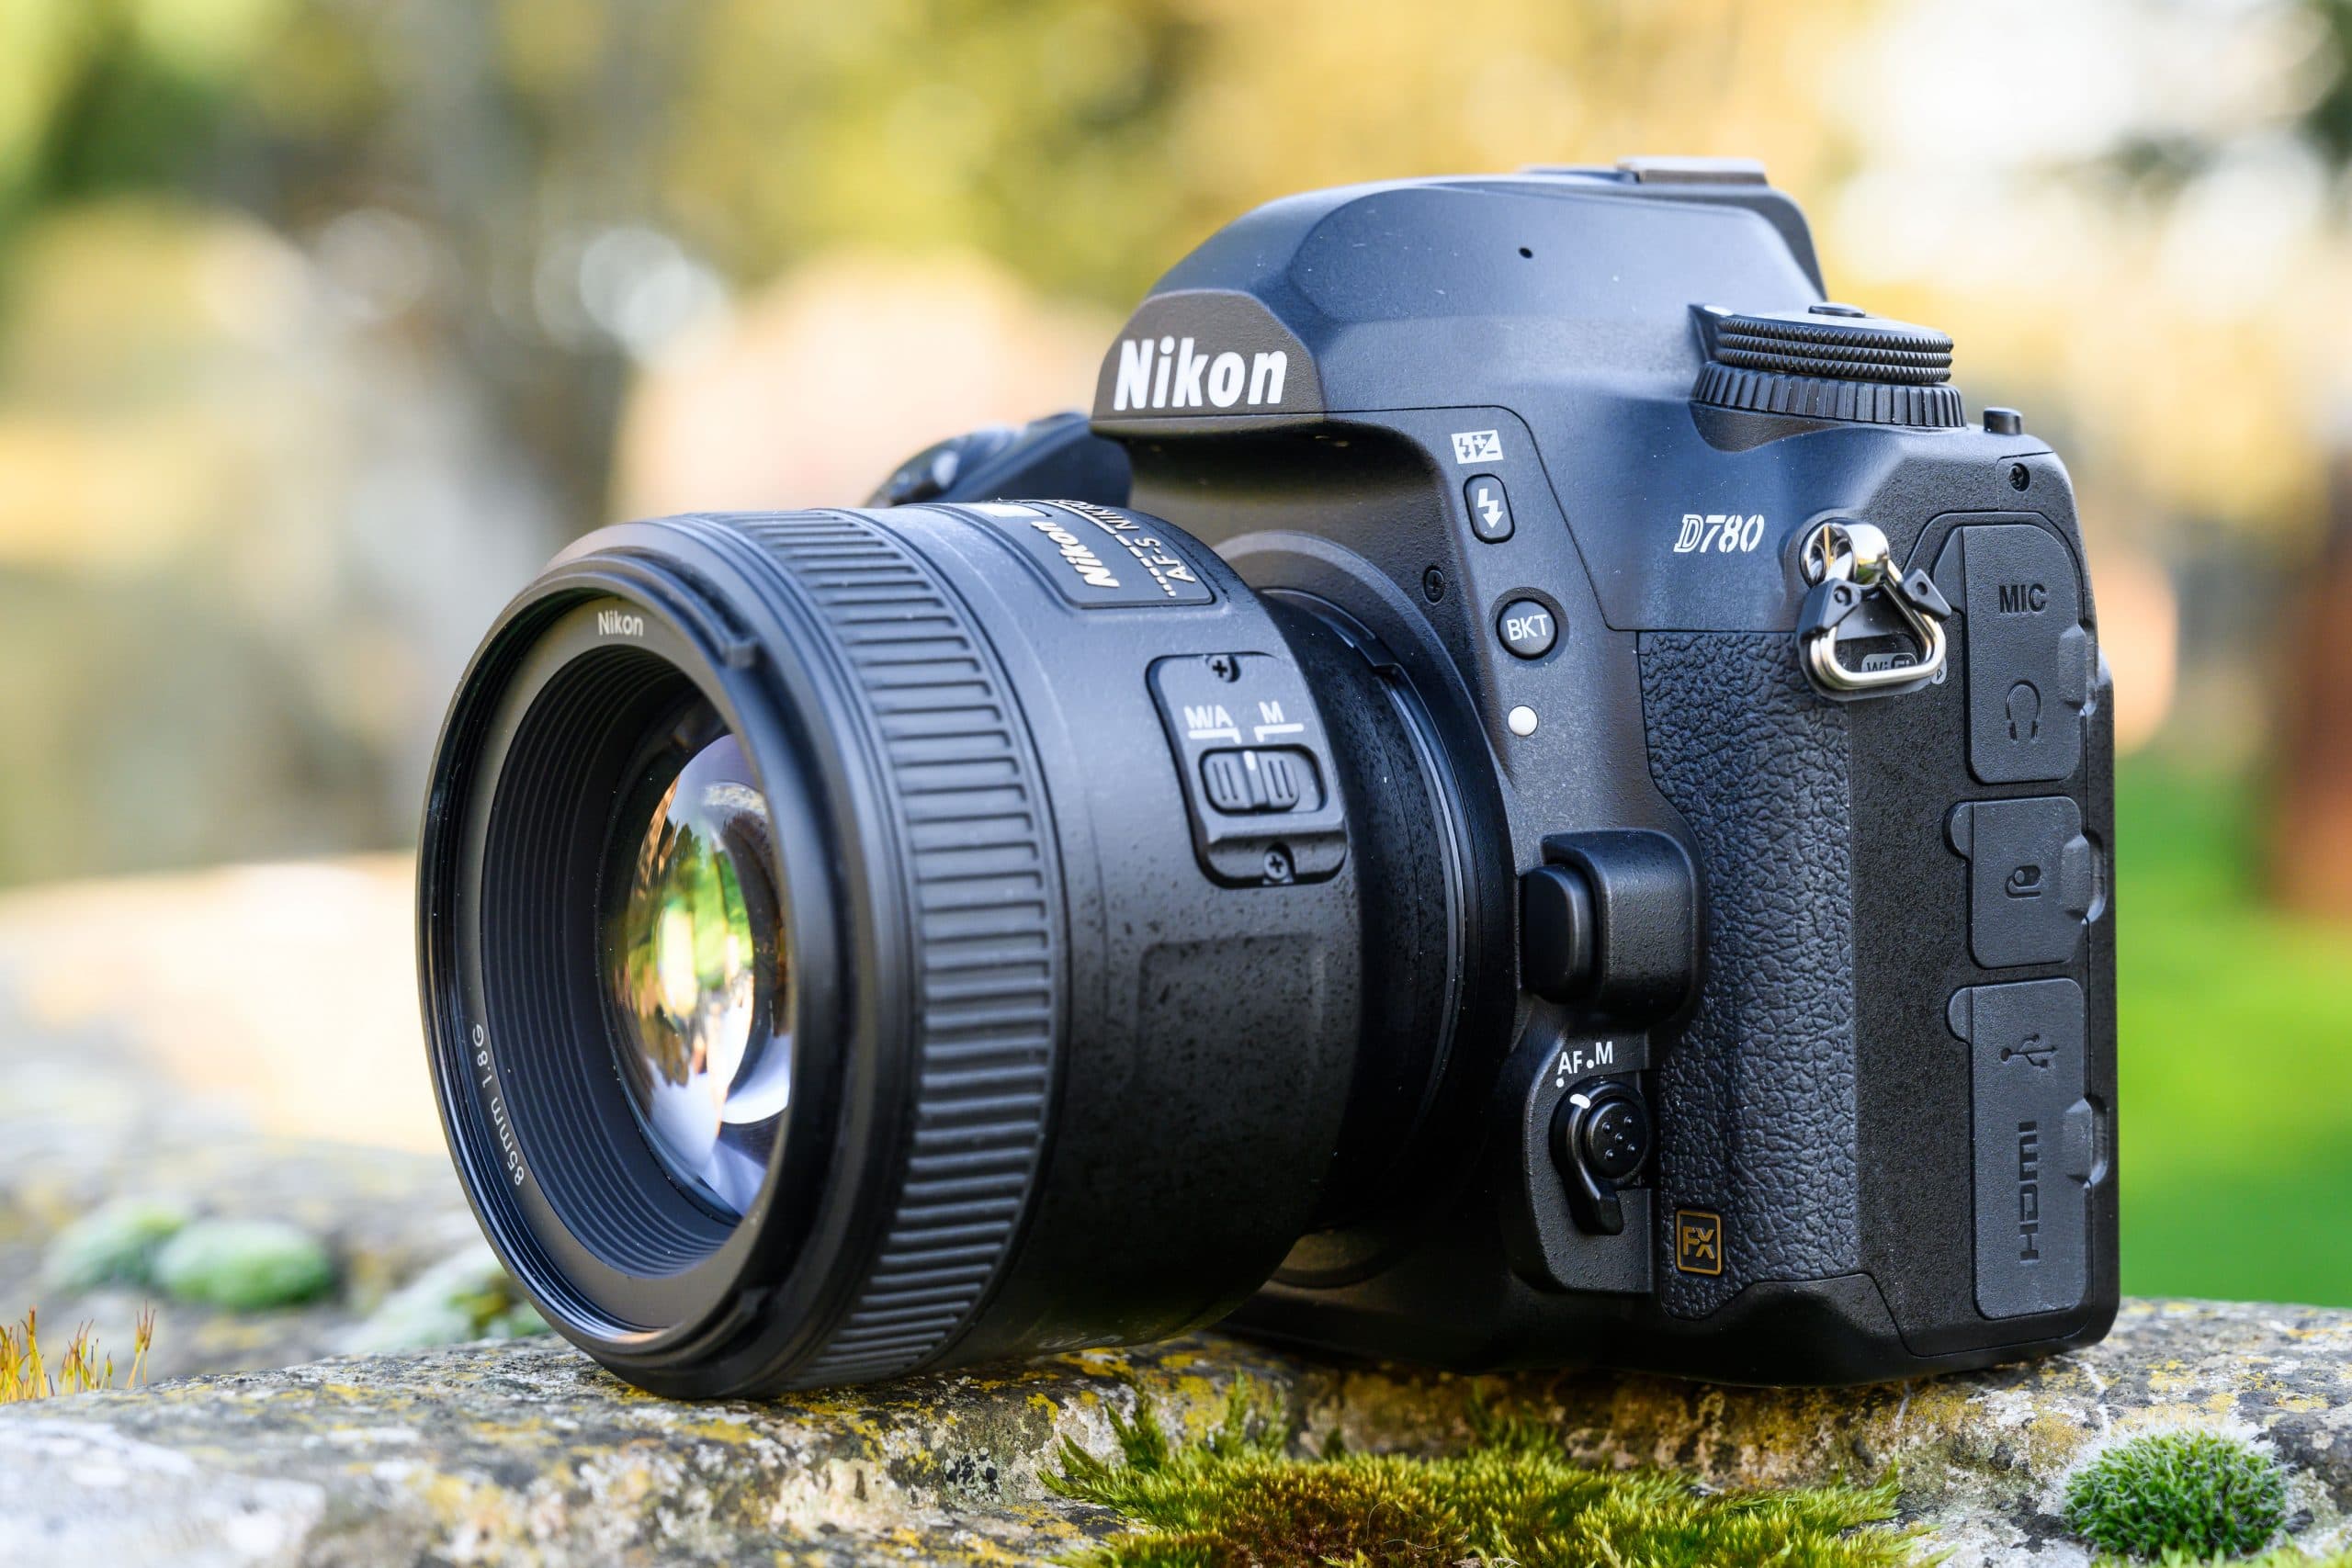 Nikon D850 45.7MP DSLR Digital 4K Video Camera with AF-S NIKKOR 24-120mm  f/4G ED VR Lens with Wi-Fi - (Black) - (International Version)